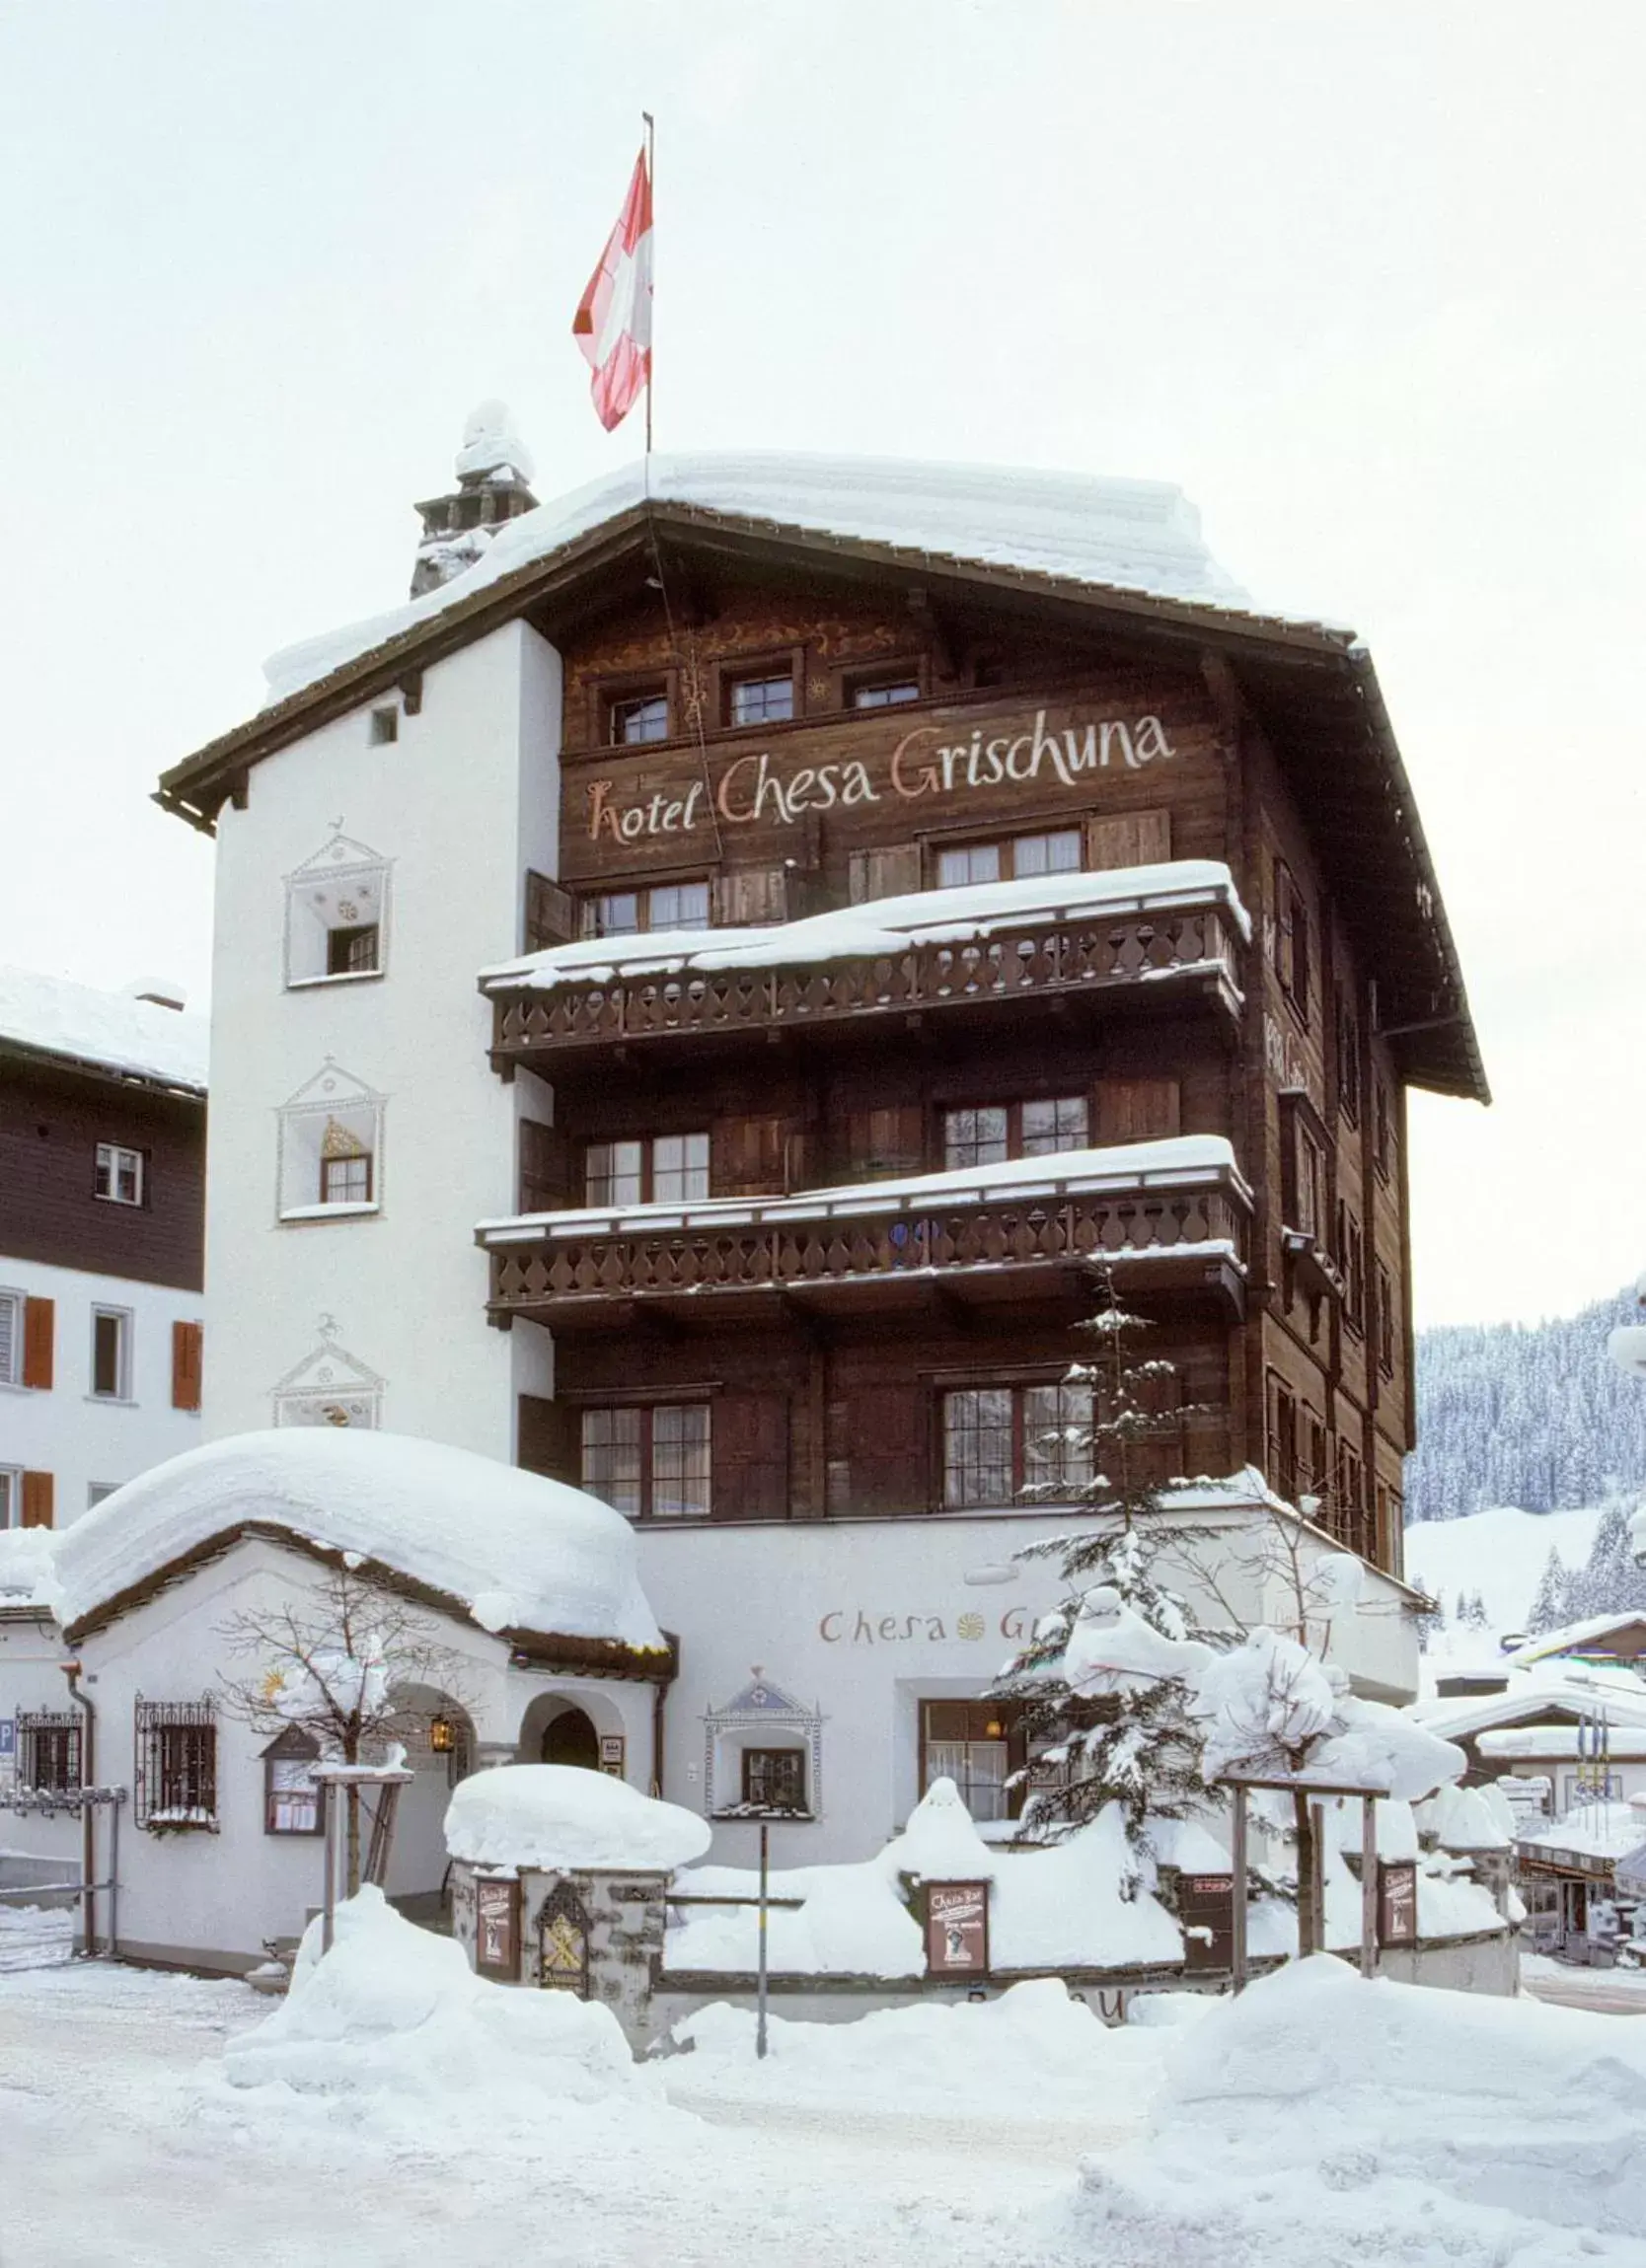 Facade/entrance, Winter in Hotel Chesa Grischuna